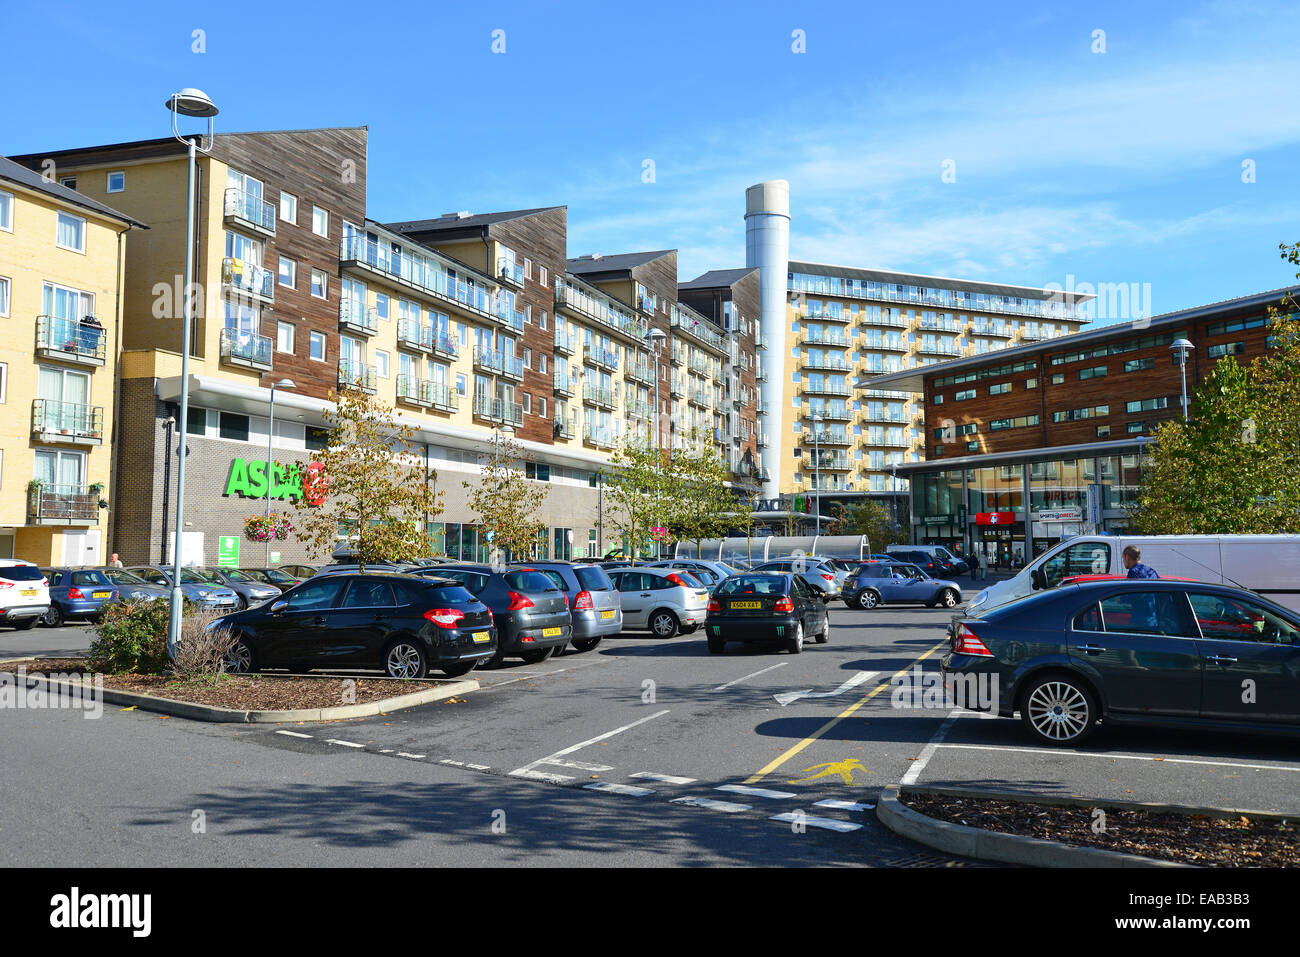 Supermarché ASDA du centre parking, Feltham, London Borough of London, Greater London, Angleterre, Royaume-Uni Banque D'Images